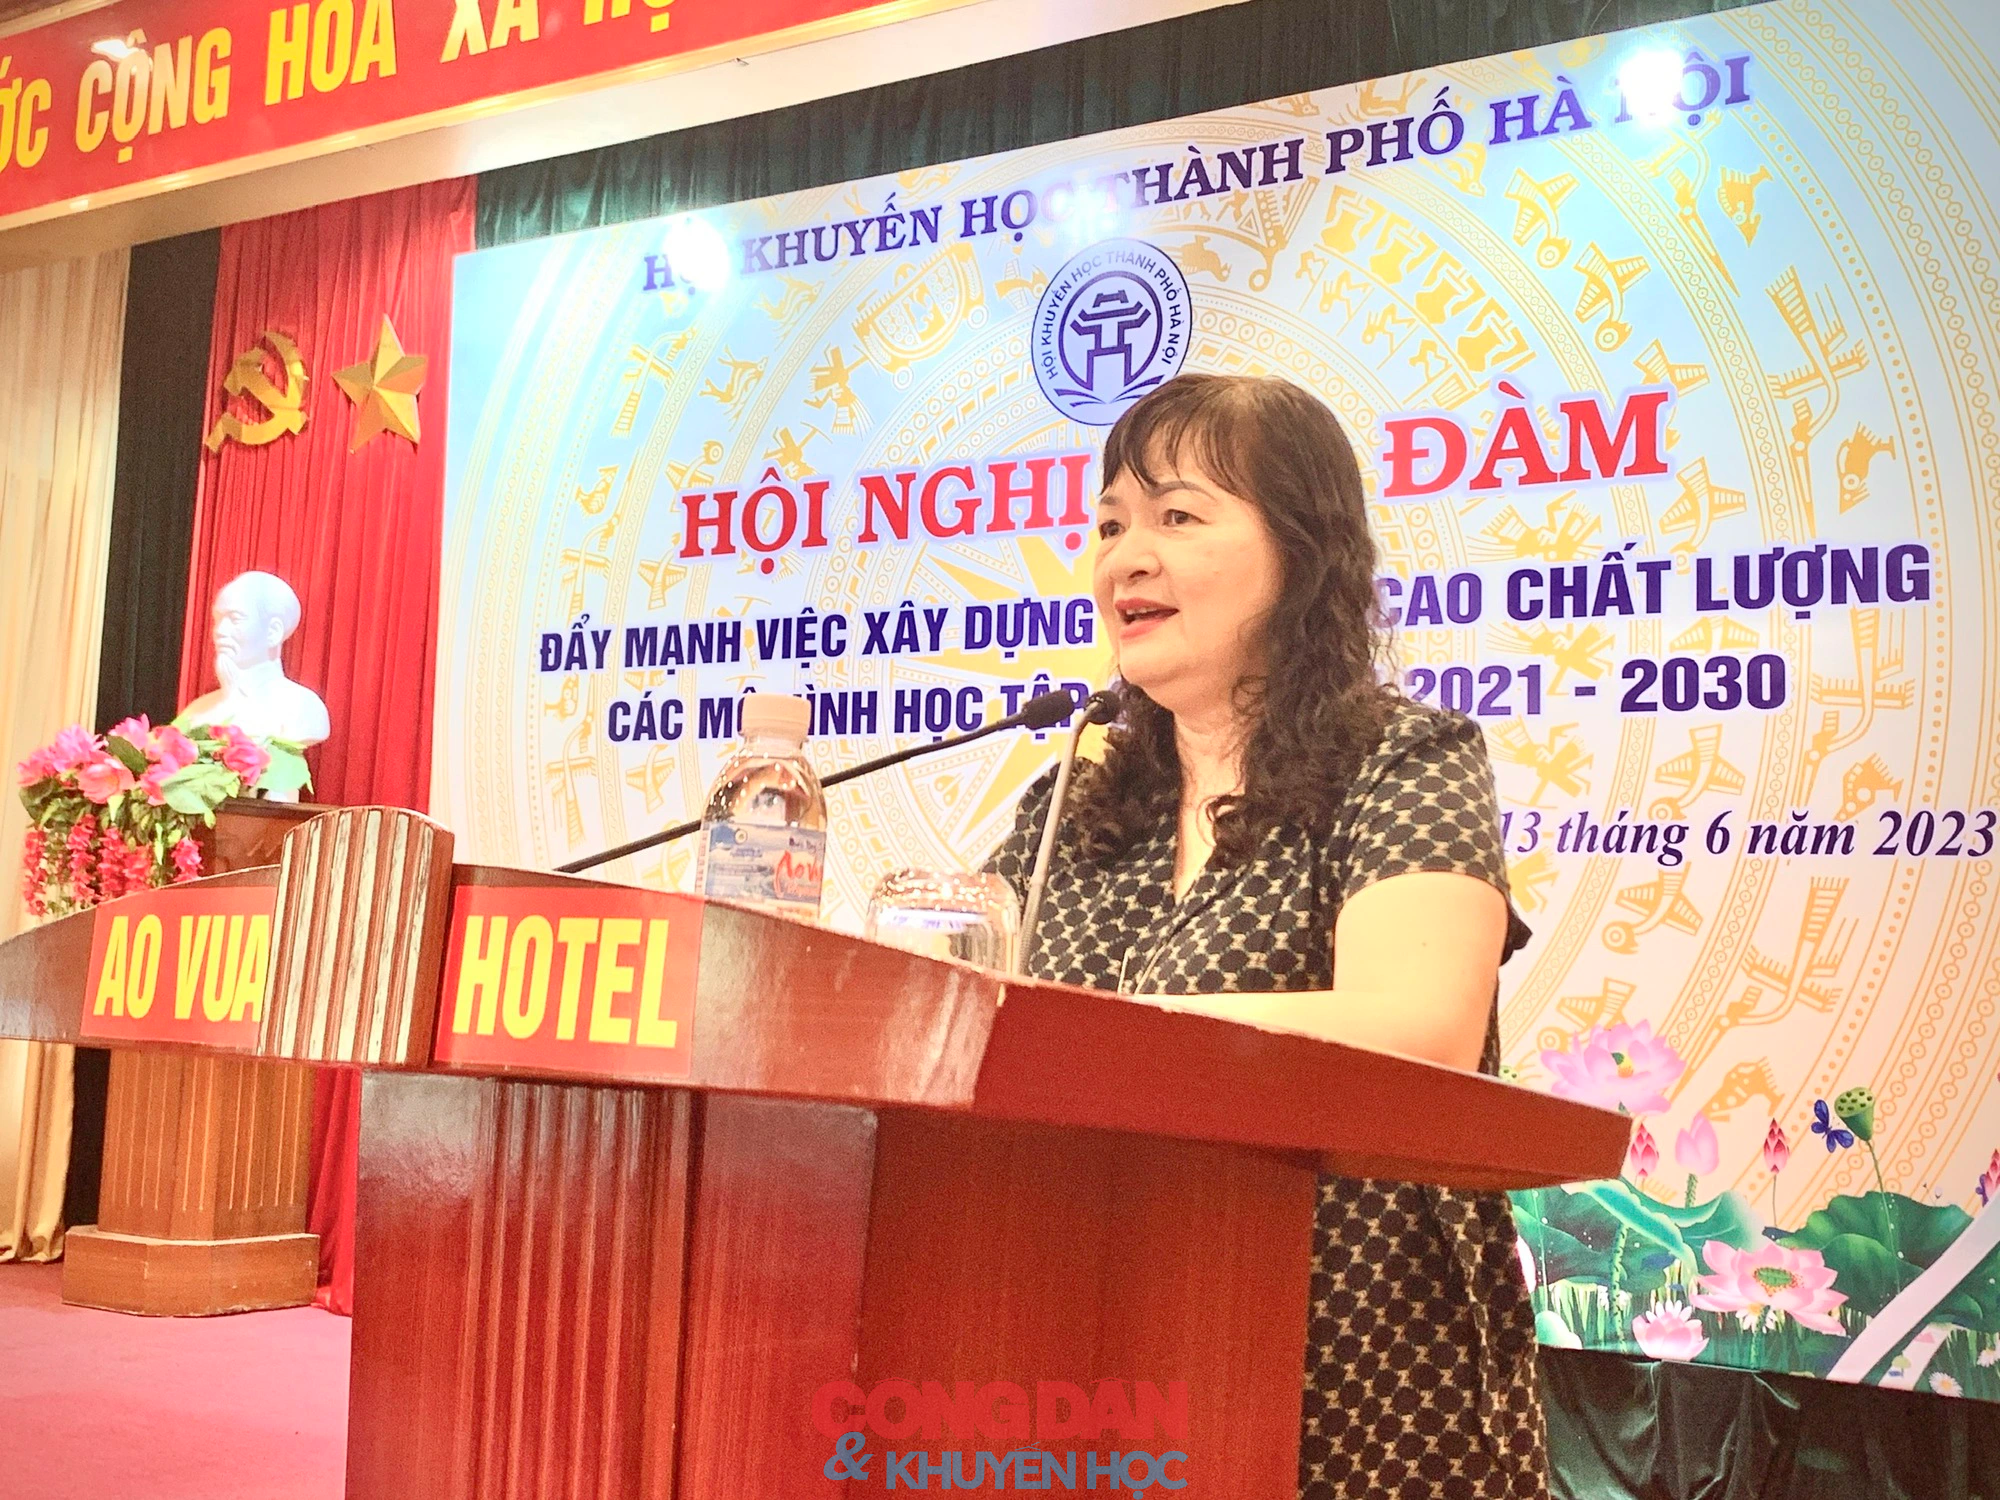 Hội Khuyến học thành phố Hà Nội đẩy mạnh xây dựng các mô hình học tập - Ảnh 2.